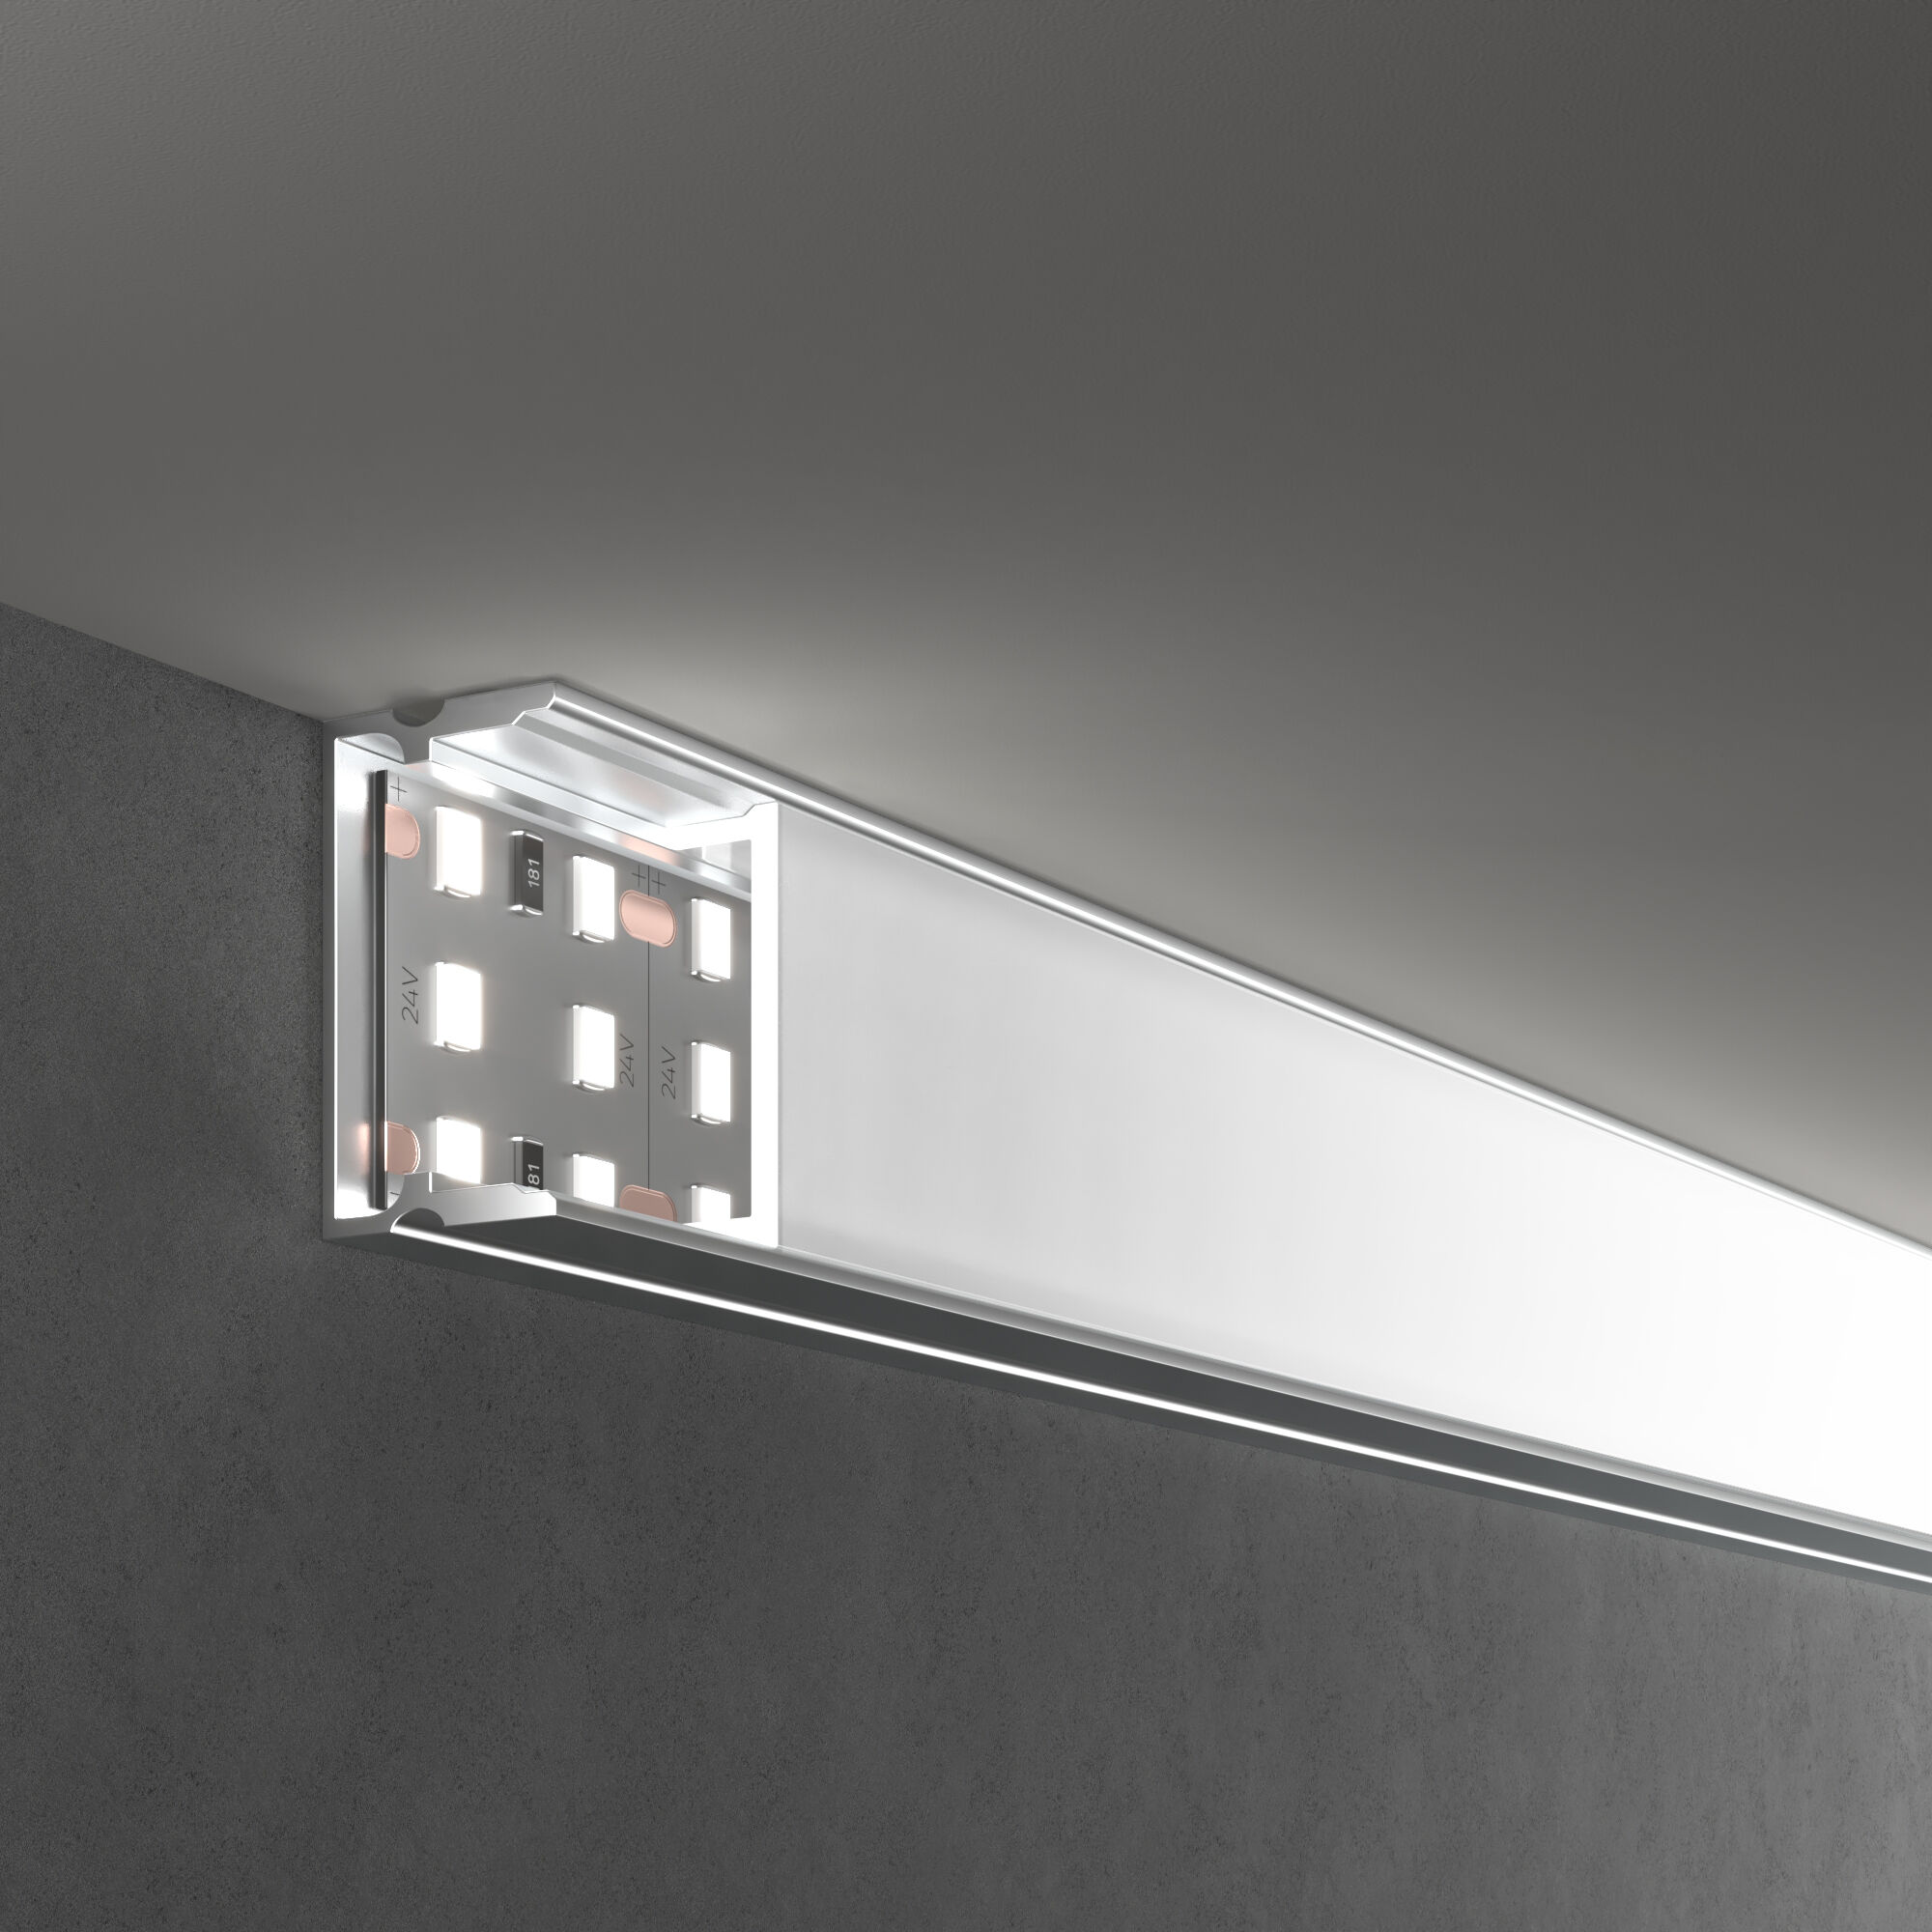 Накладной алюминиевый профиль для трехрядной LED ленты (под ленту до 18,5mm) Elektrostandard LL-2-ALP018 a062731